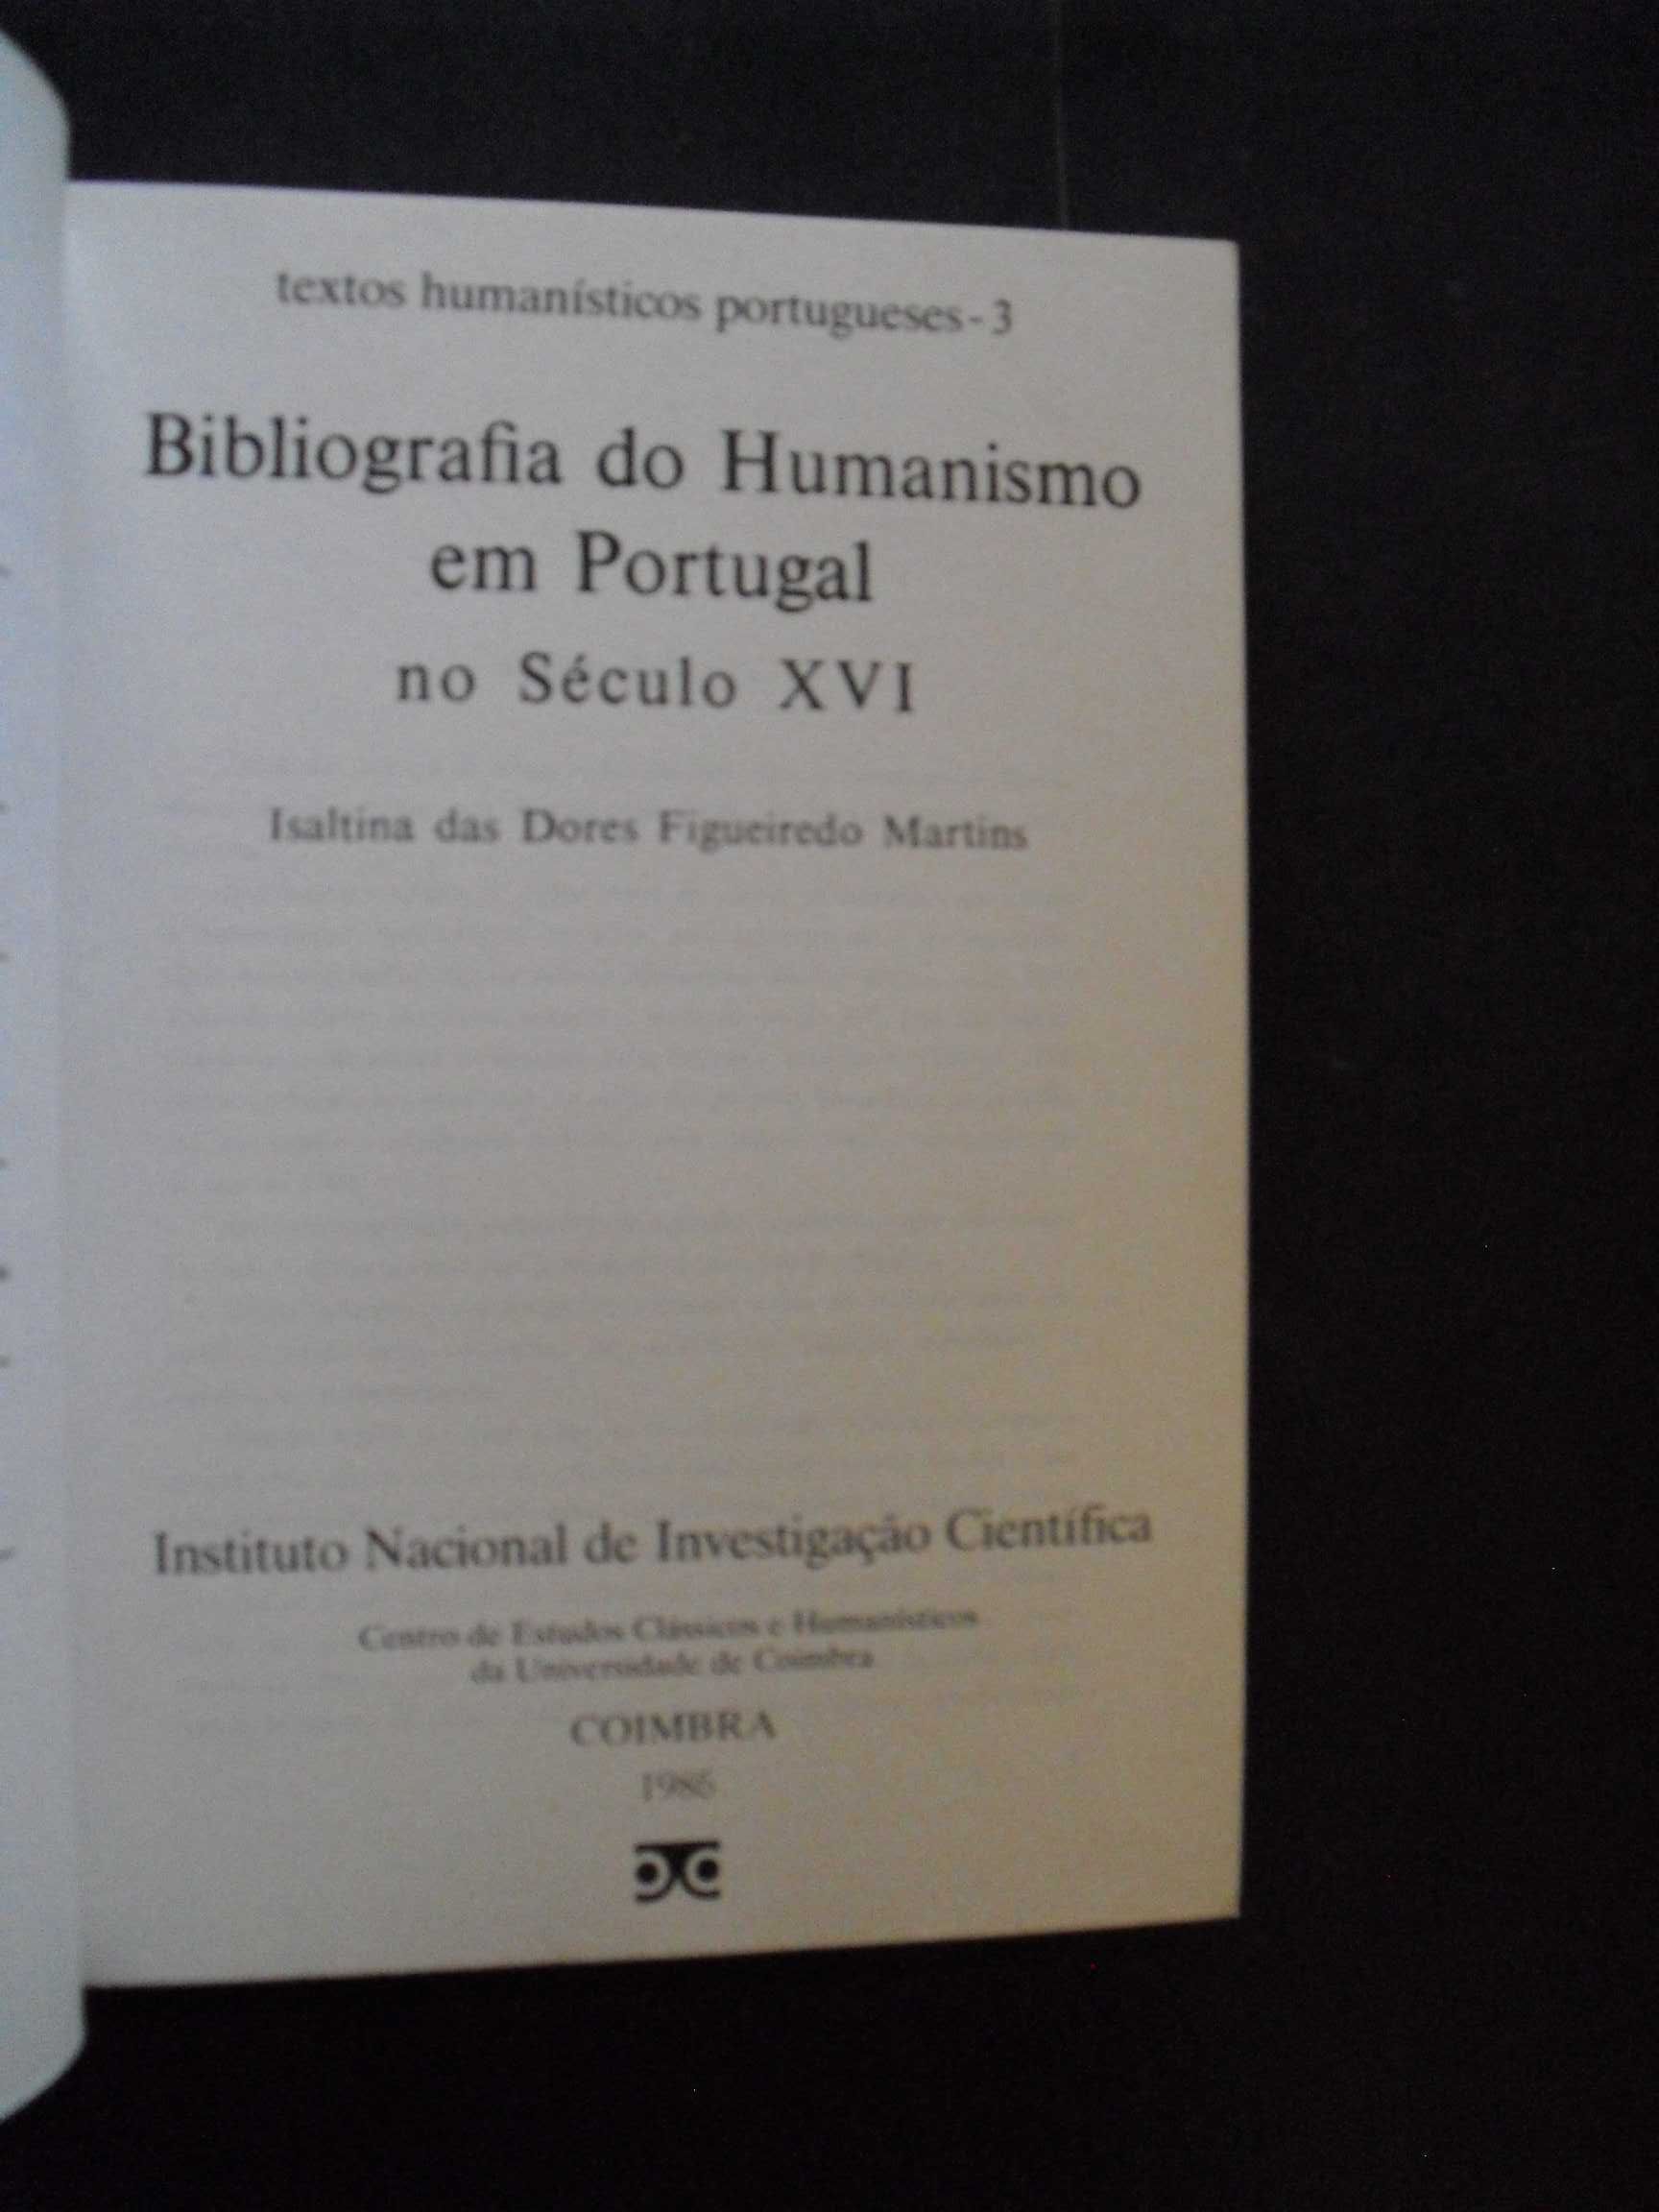 Martins (Isaltina Figueiredo);Bibliografia do Humanismo em Portugal